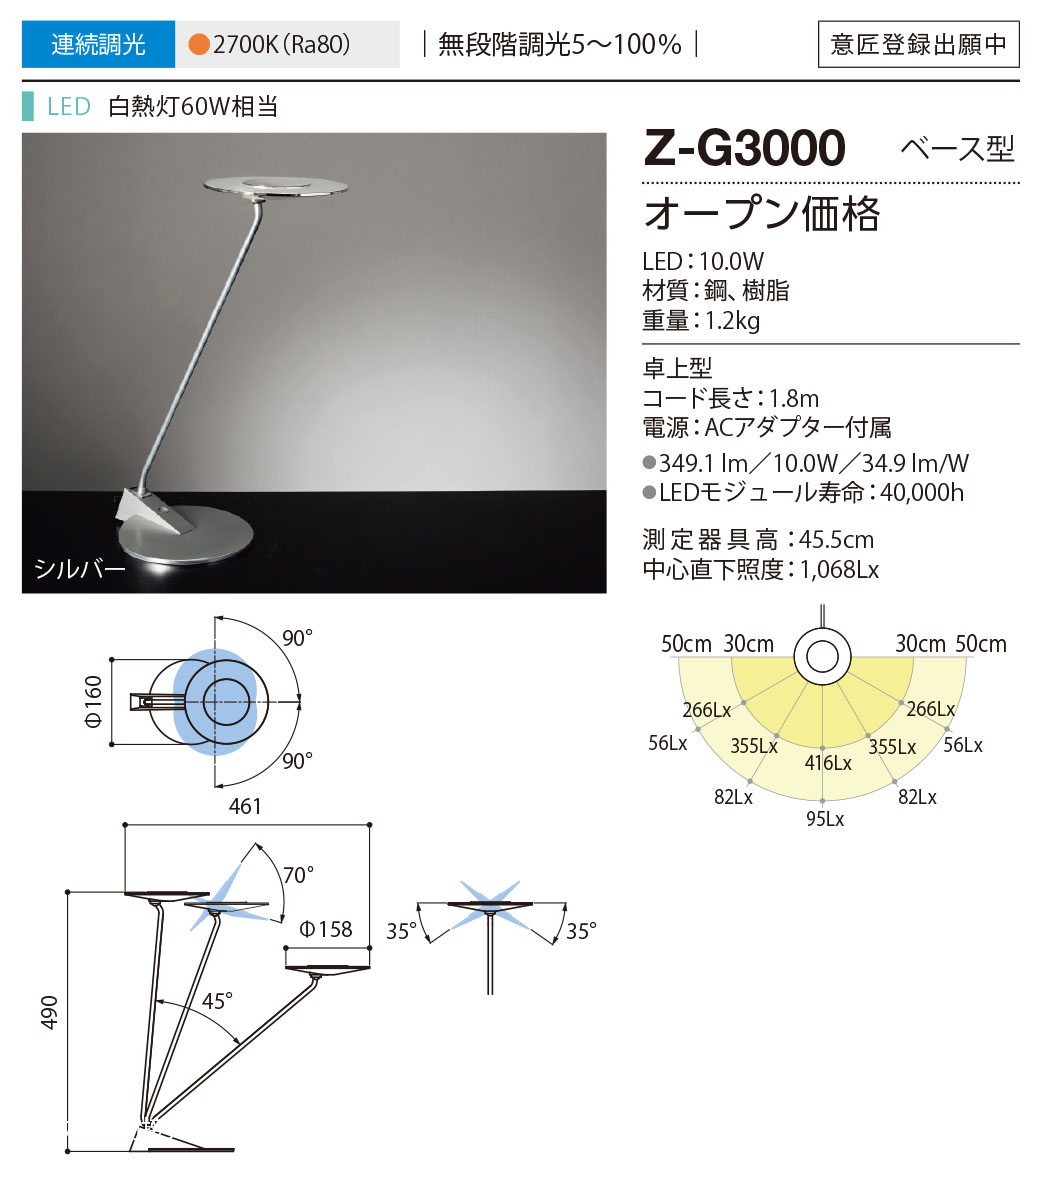 山田照明 Z-G3000